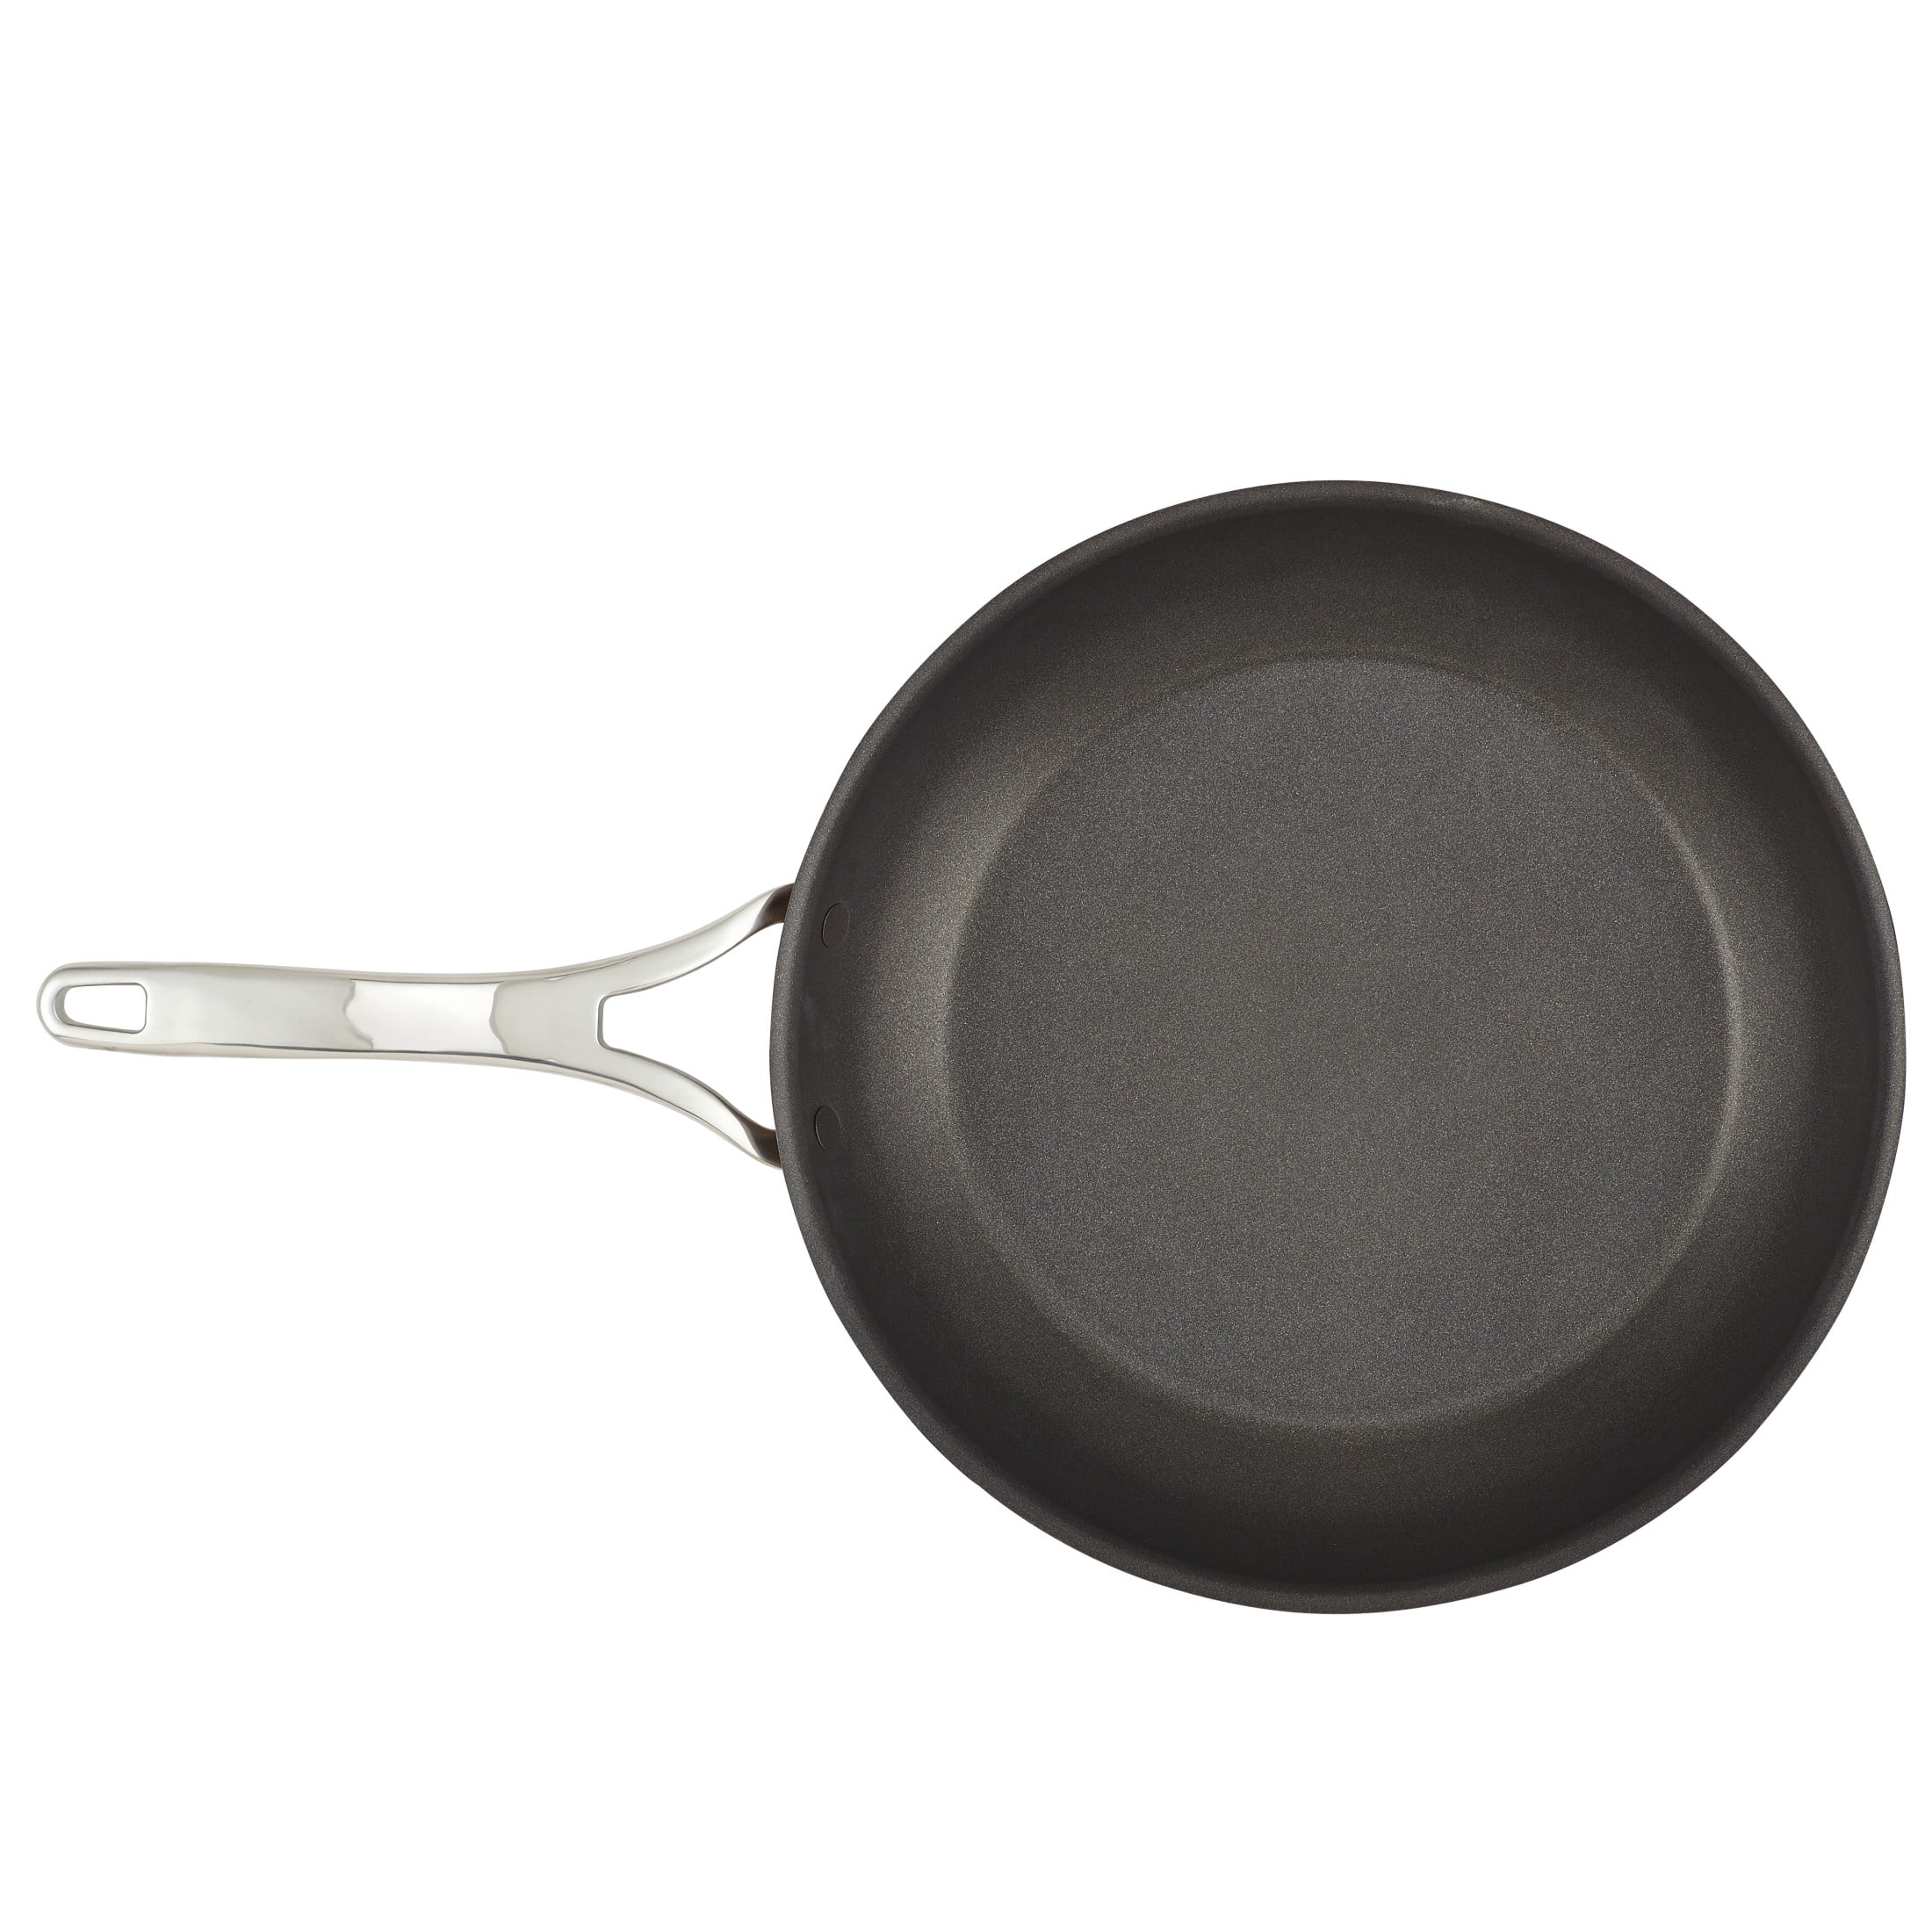 Frying Pan – Anolon